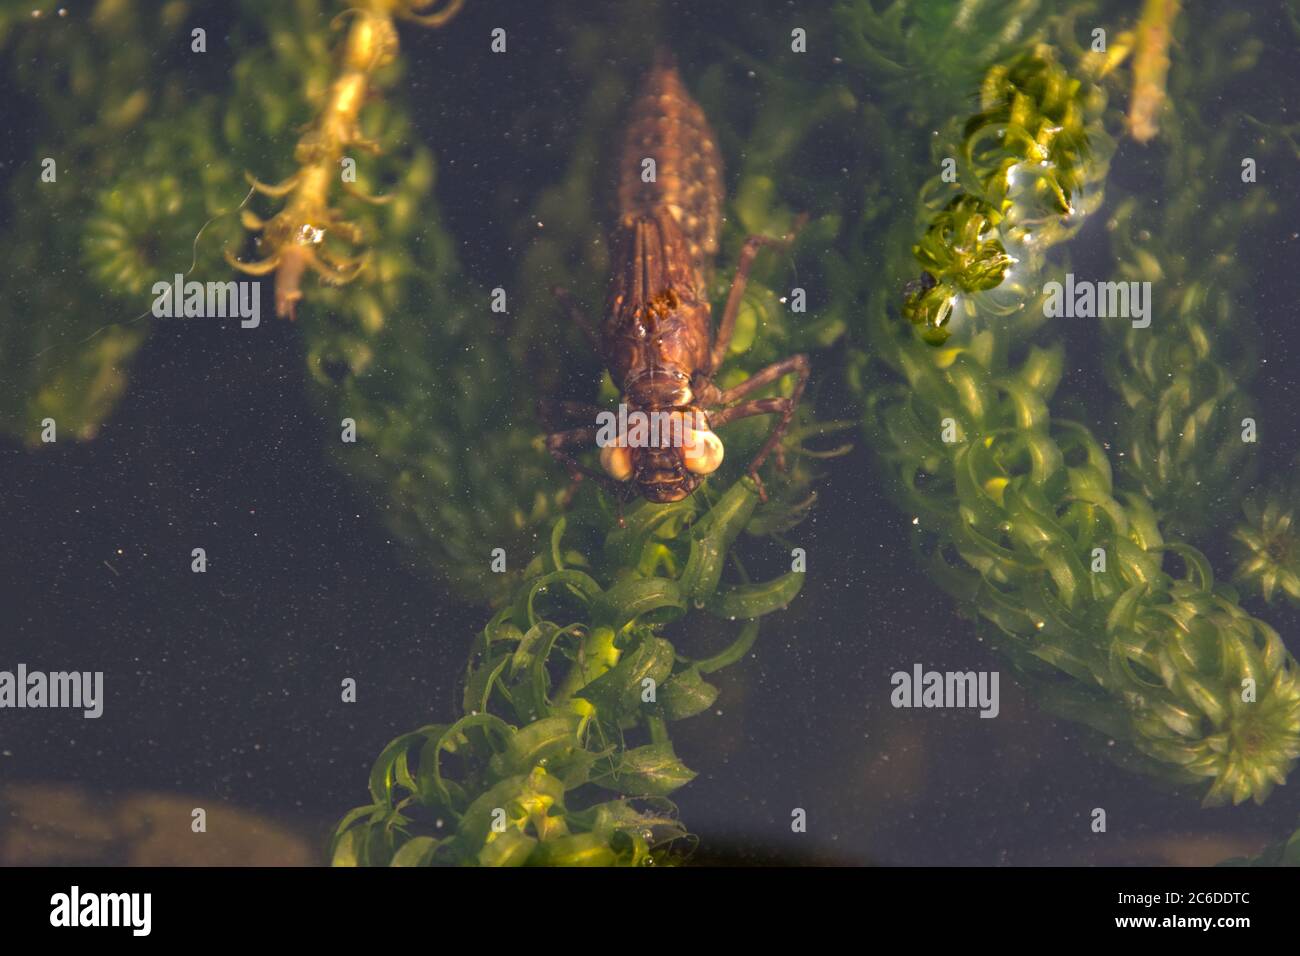 La ninfa de Dragonfly en un estanque de jardín respirando aire antes de emerger Foto de stock